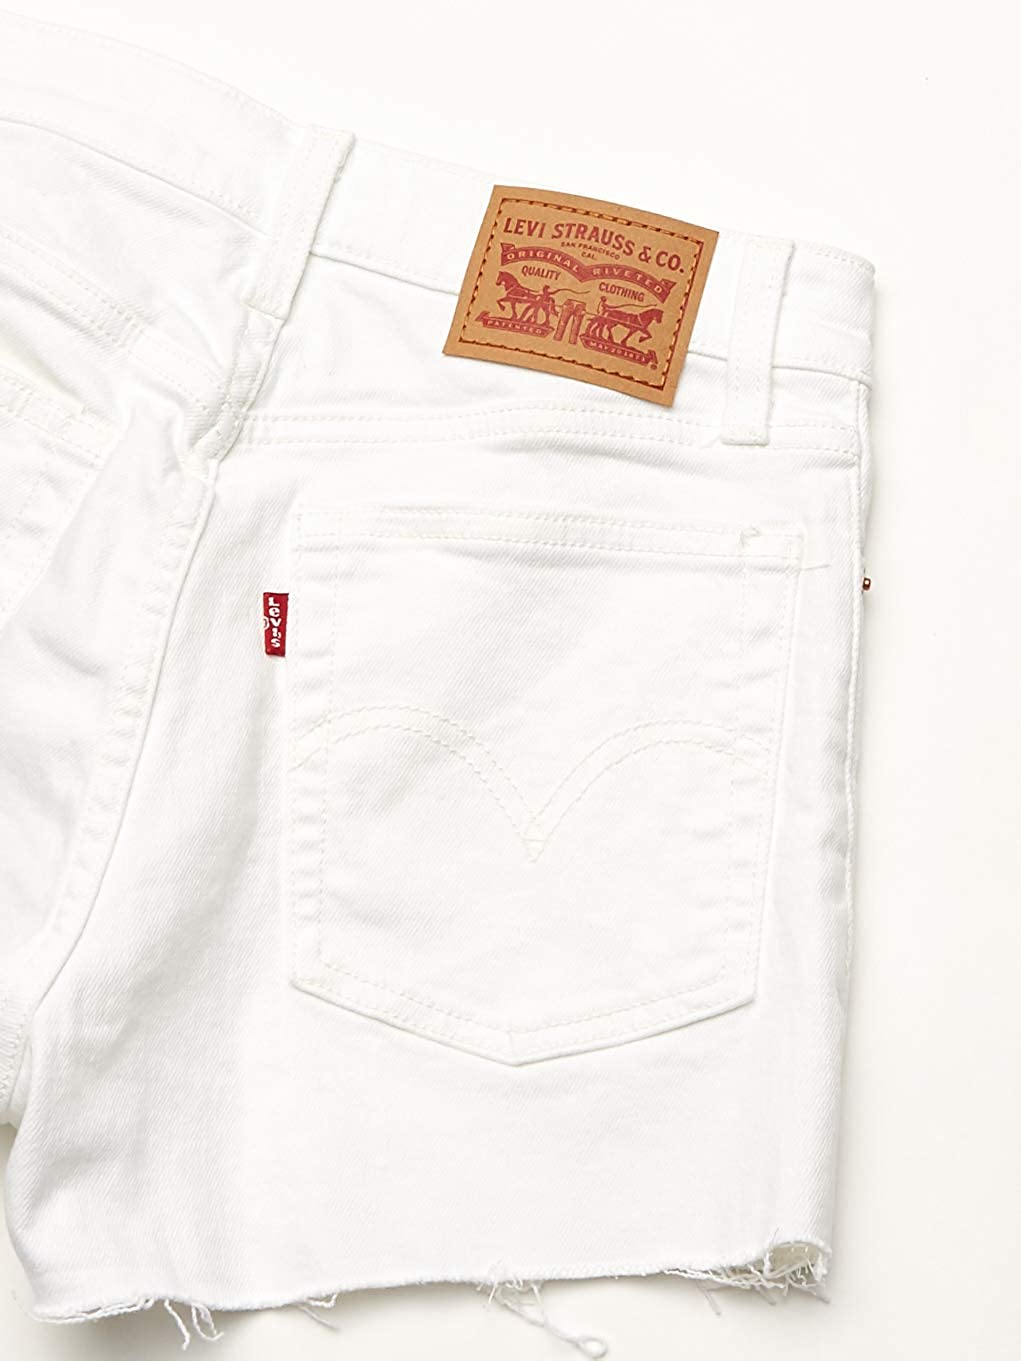 Levi's Women's Hr Shorts, White, Size 0.0 xUUQ | eBay